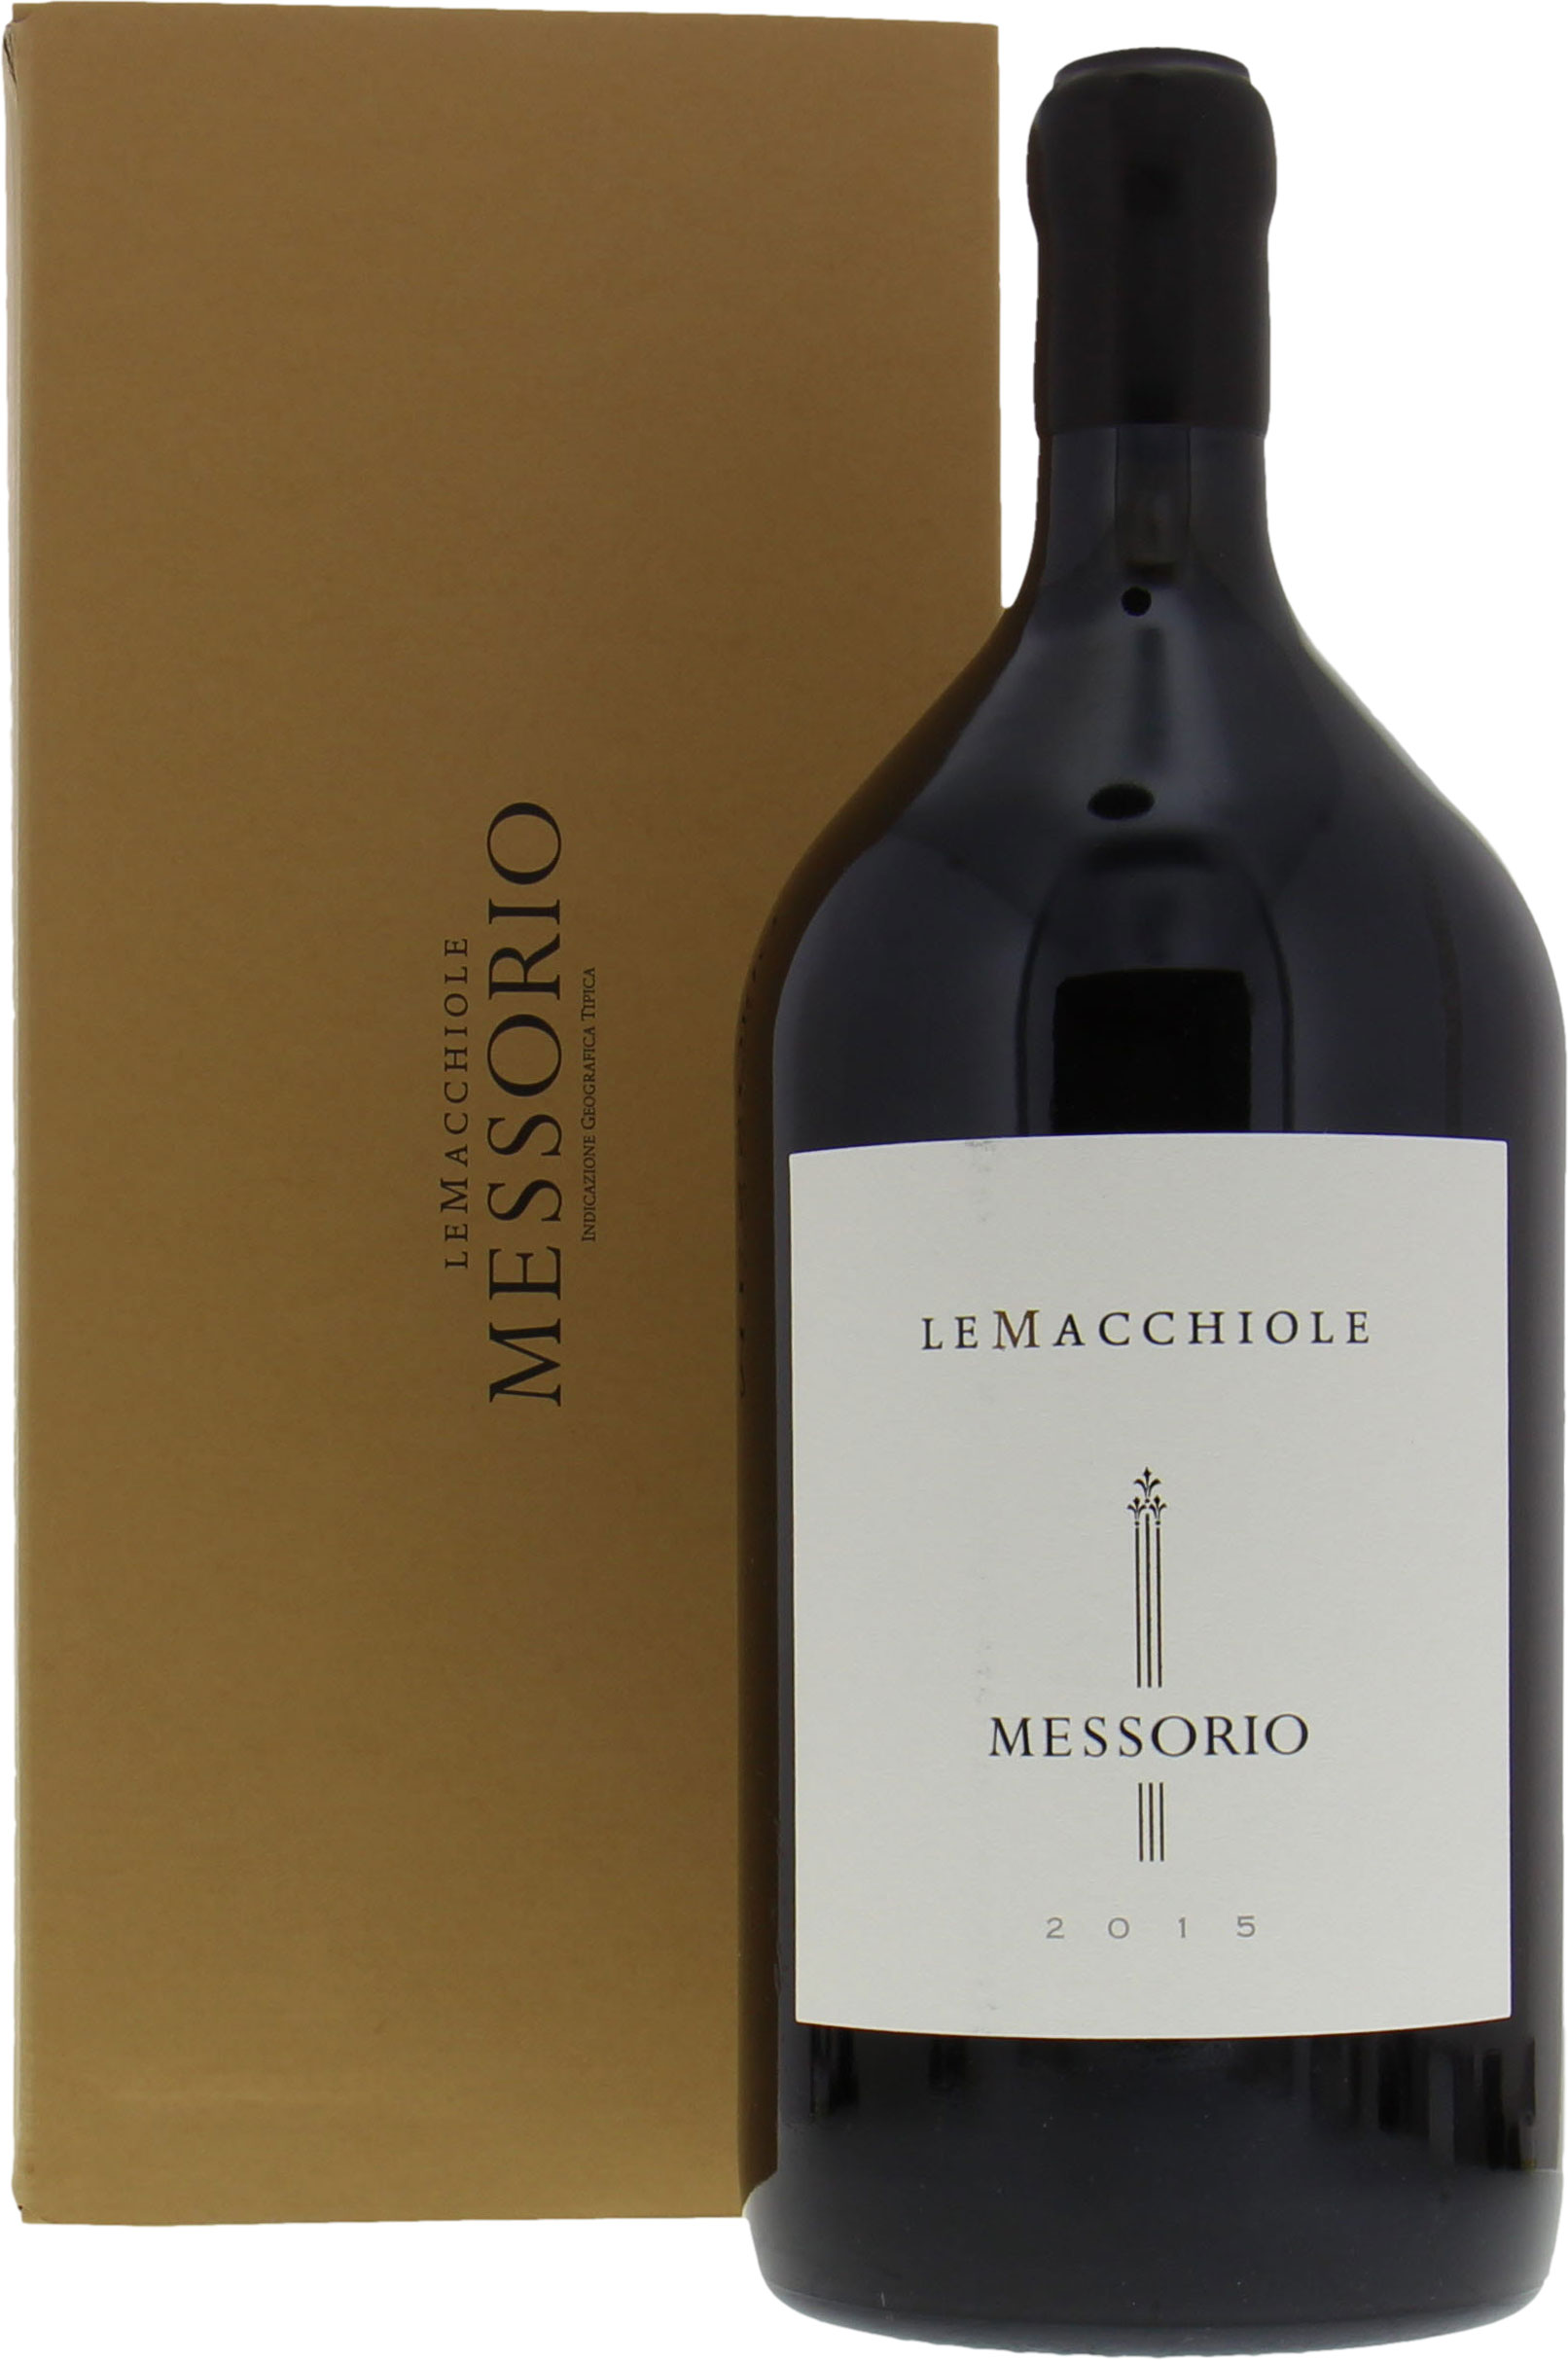 Le Macchiole - Messorio 2015